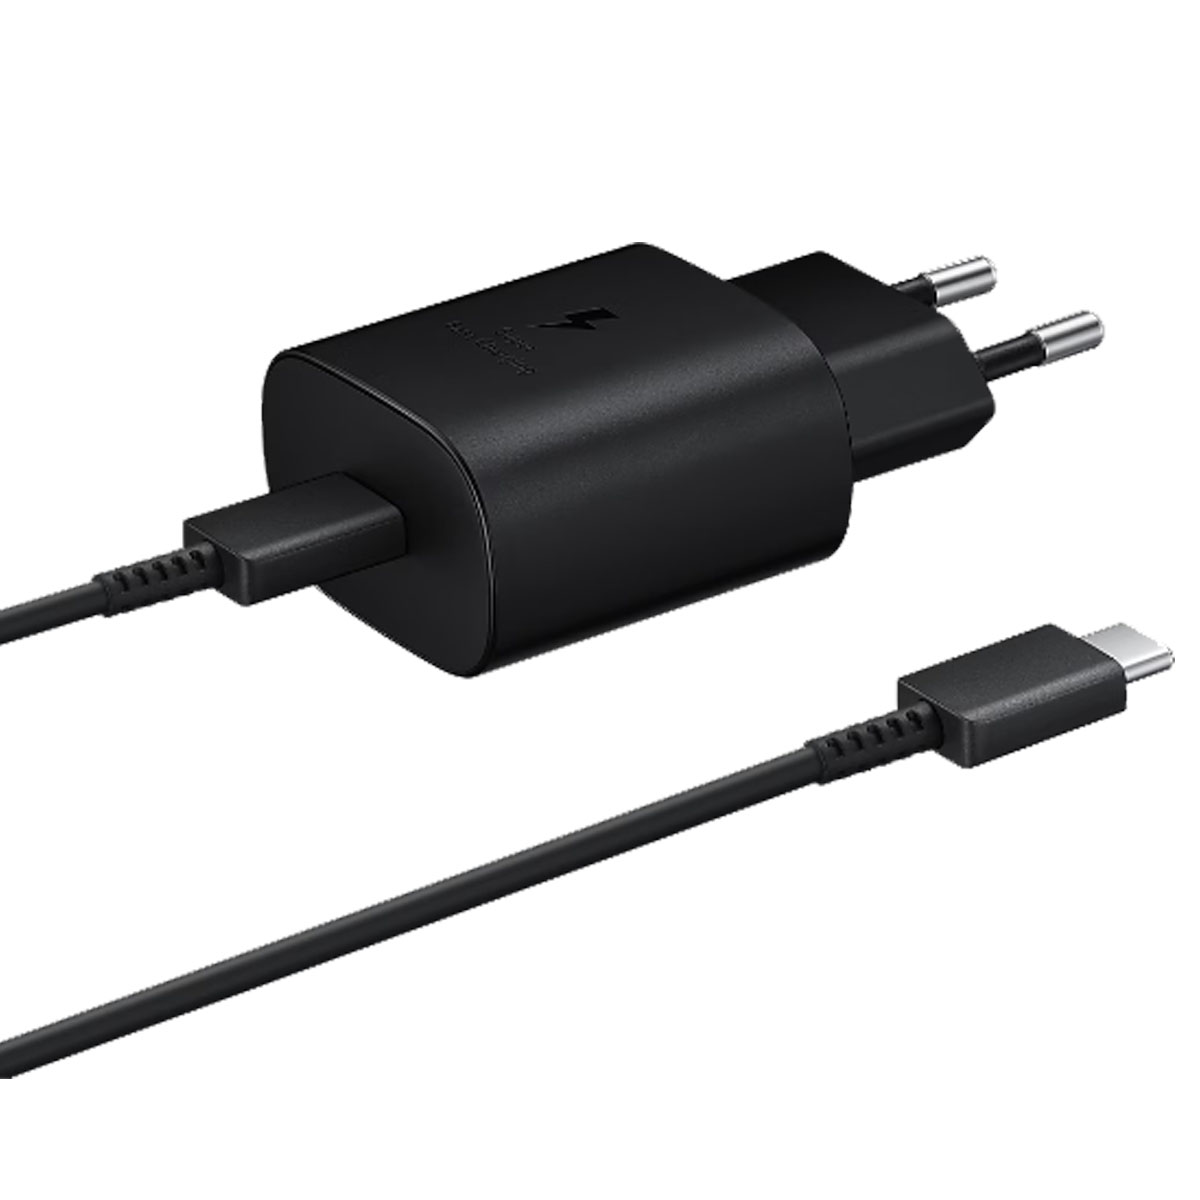 СЗУ (Сетевое зарядное устройство) EP-TA800 с кабелем USB Type C на USB Type C, 25W, 1 USB Type C, длина 1 метр, цвет черный